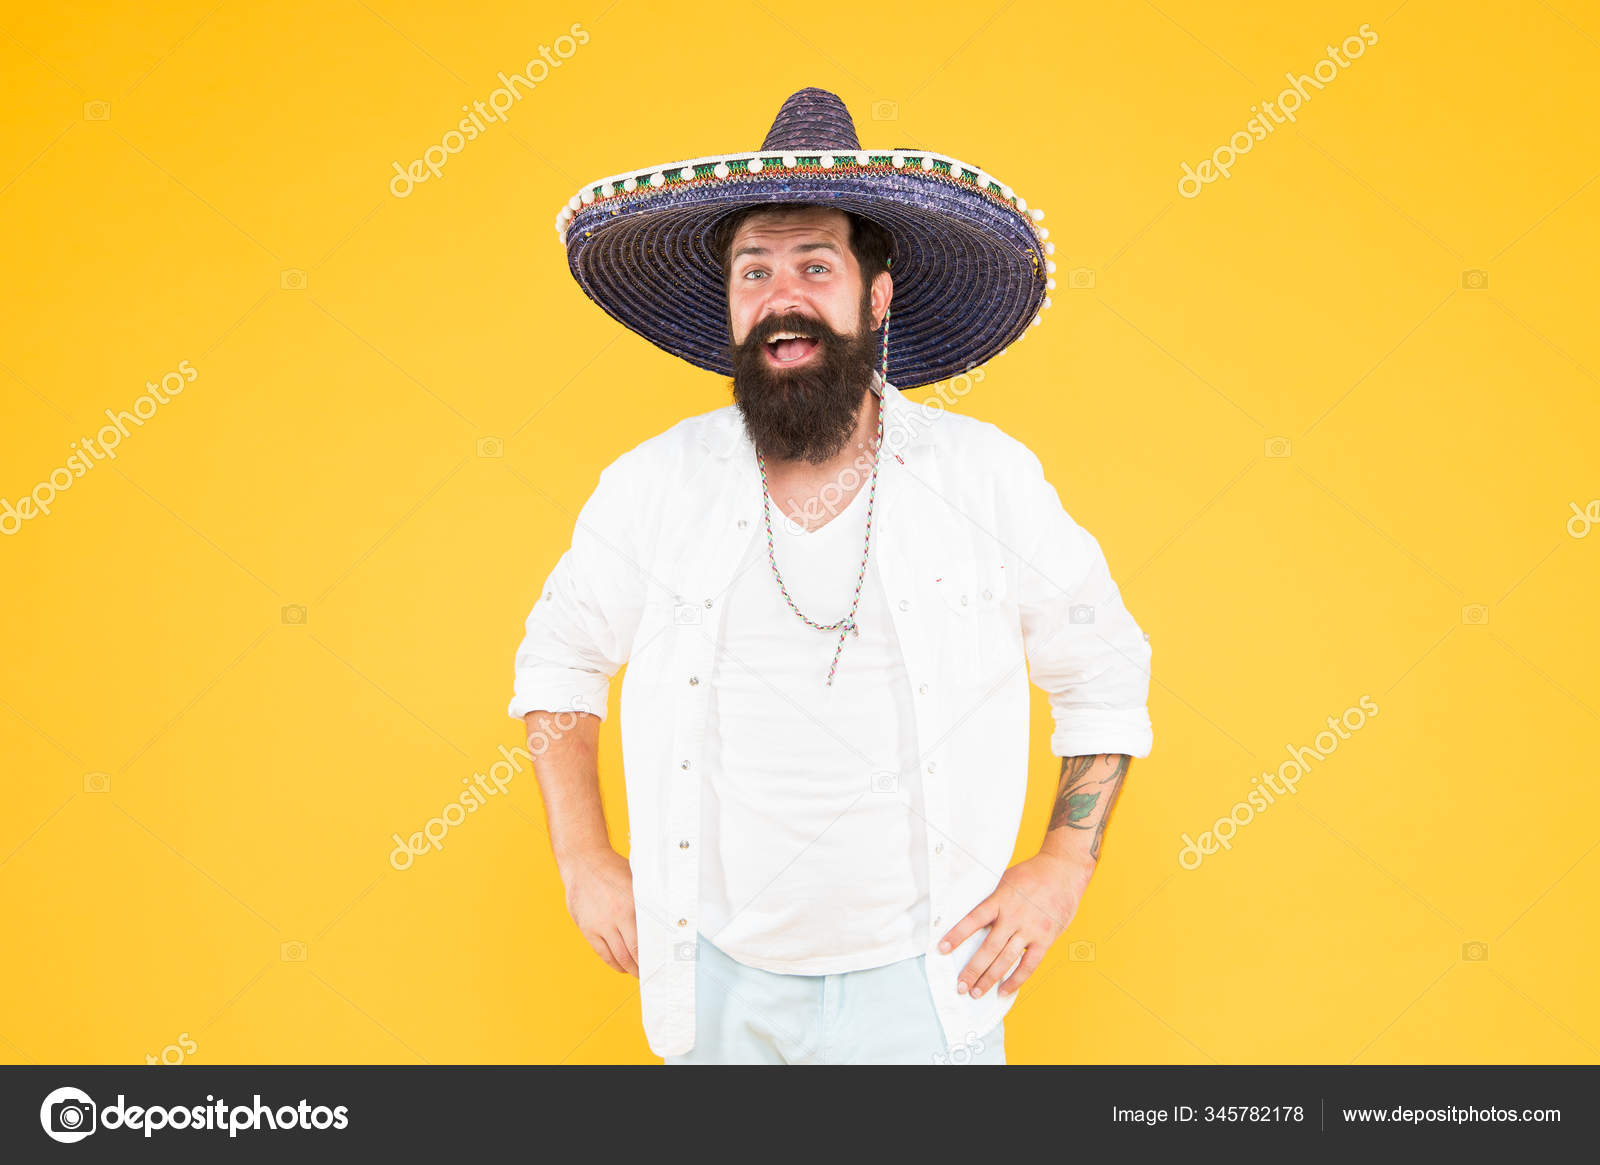 Sombrero De Paja Mexicano Fiesta Mexicana